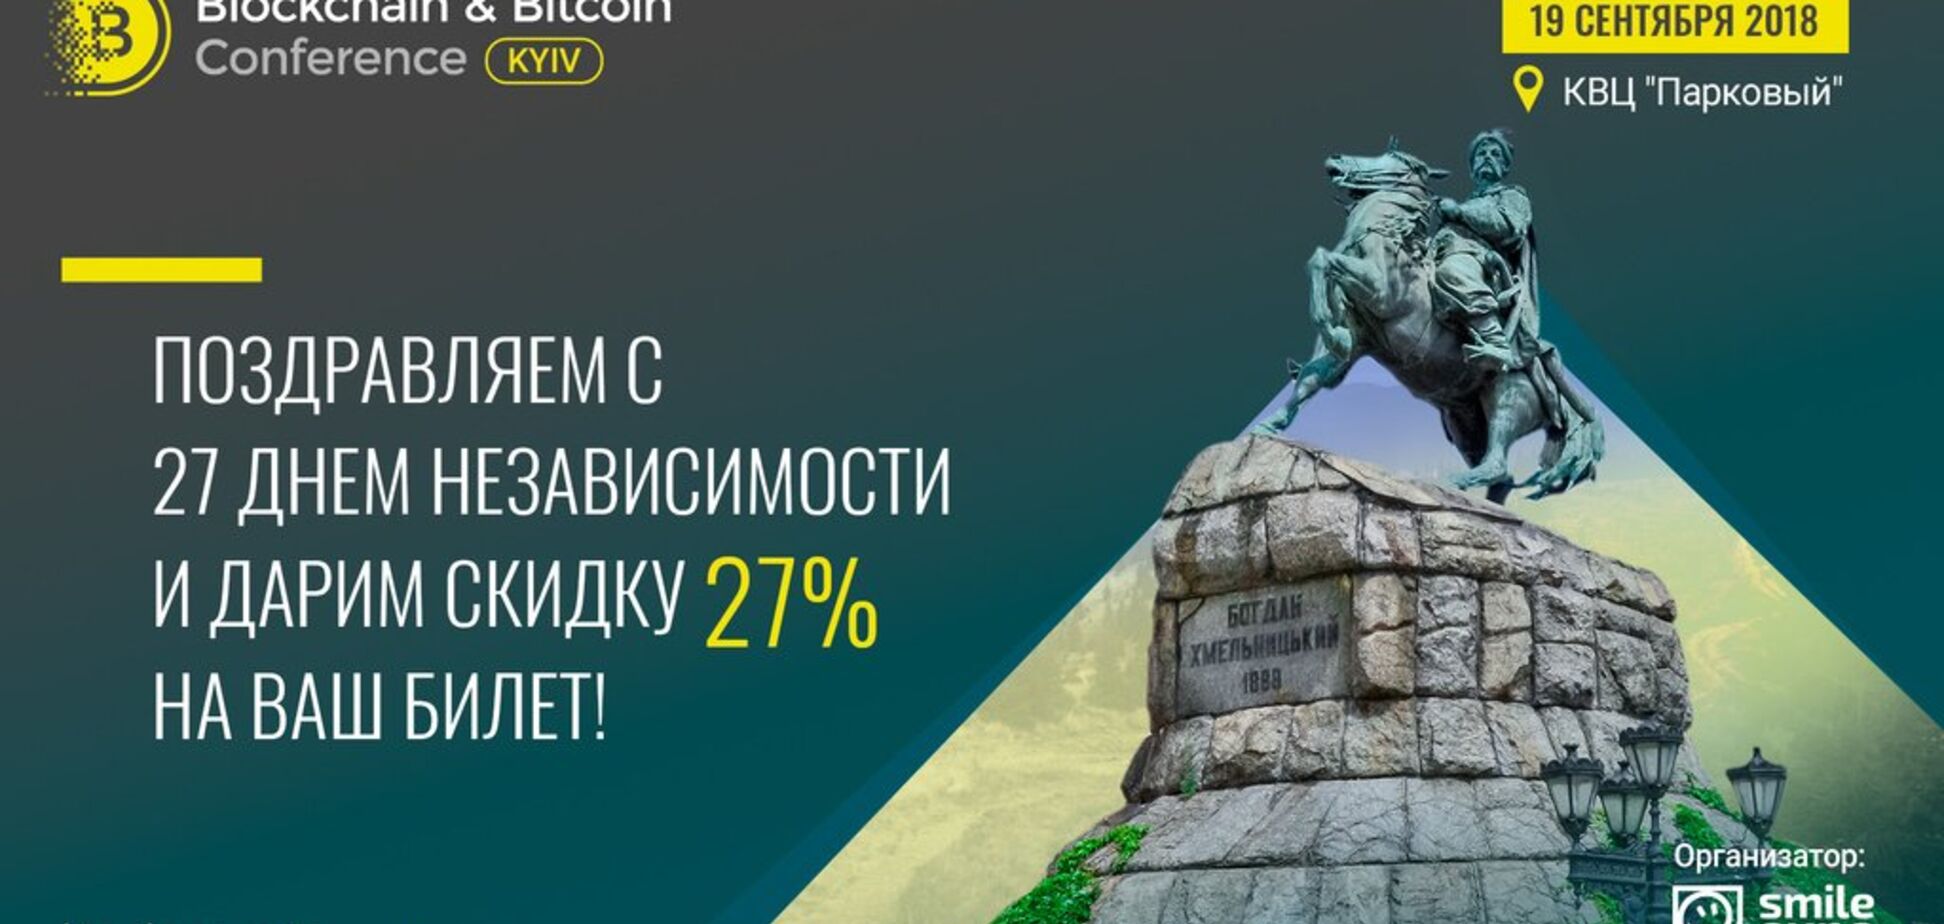 До 27-ї річниці незалежності України Blockchain & Bitcoin Conference Kyiv дарує знижку на квитки – 27%